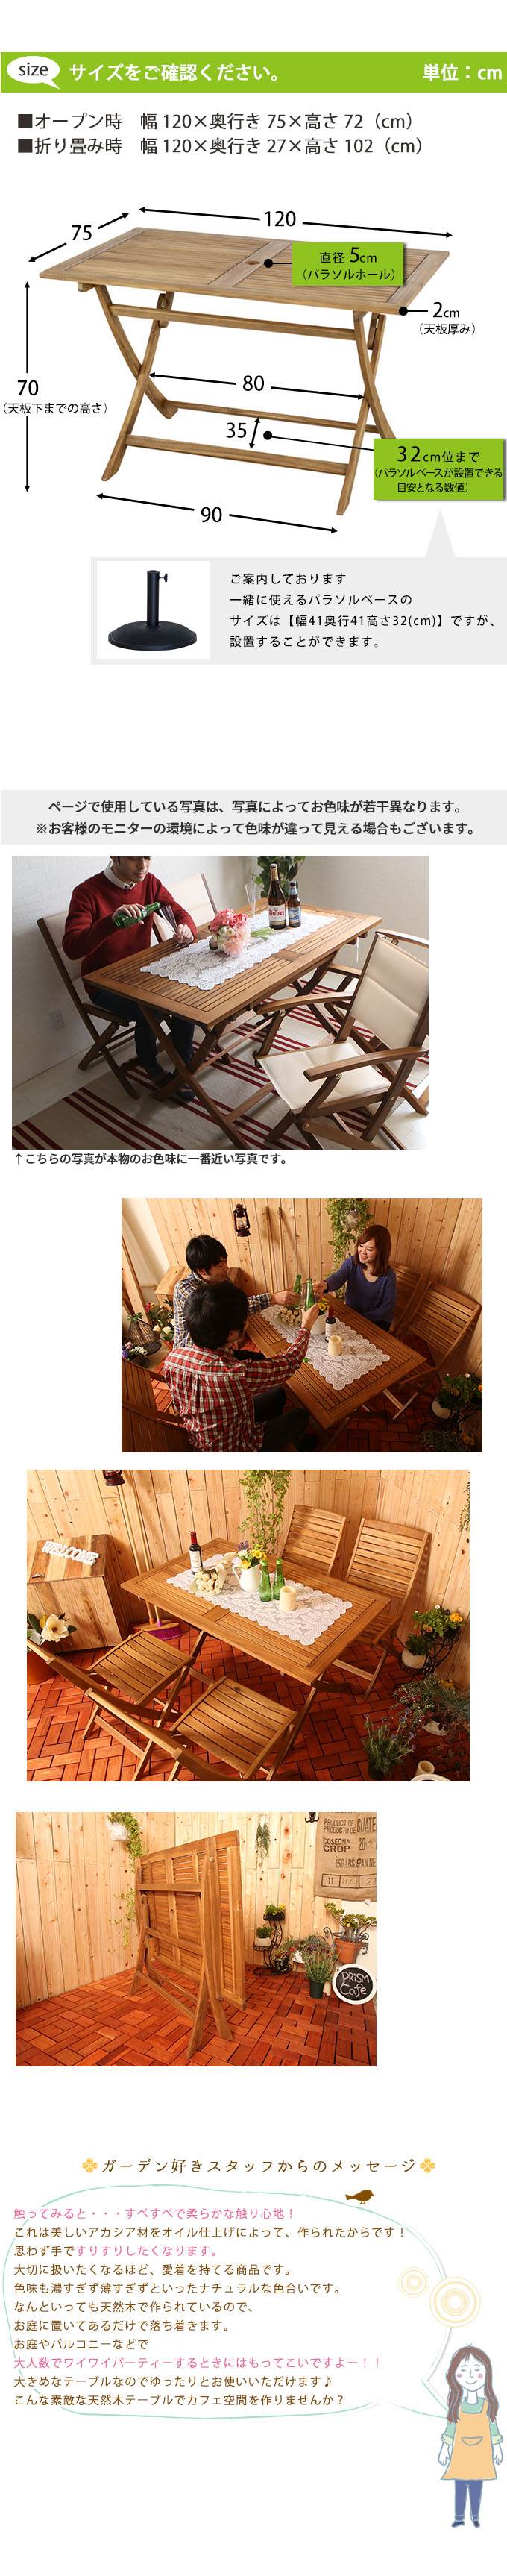 【楽天市場】ガーデンテーブル 折り畳み式テーブル 折りたたみテーブル おりたたみテーブル 四人用 庭用テーブル アウトドアテーブル 屋外